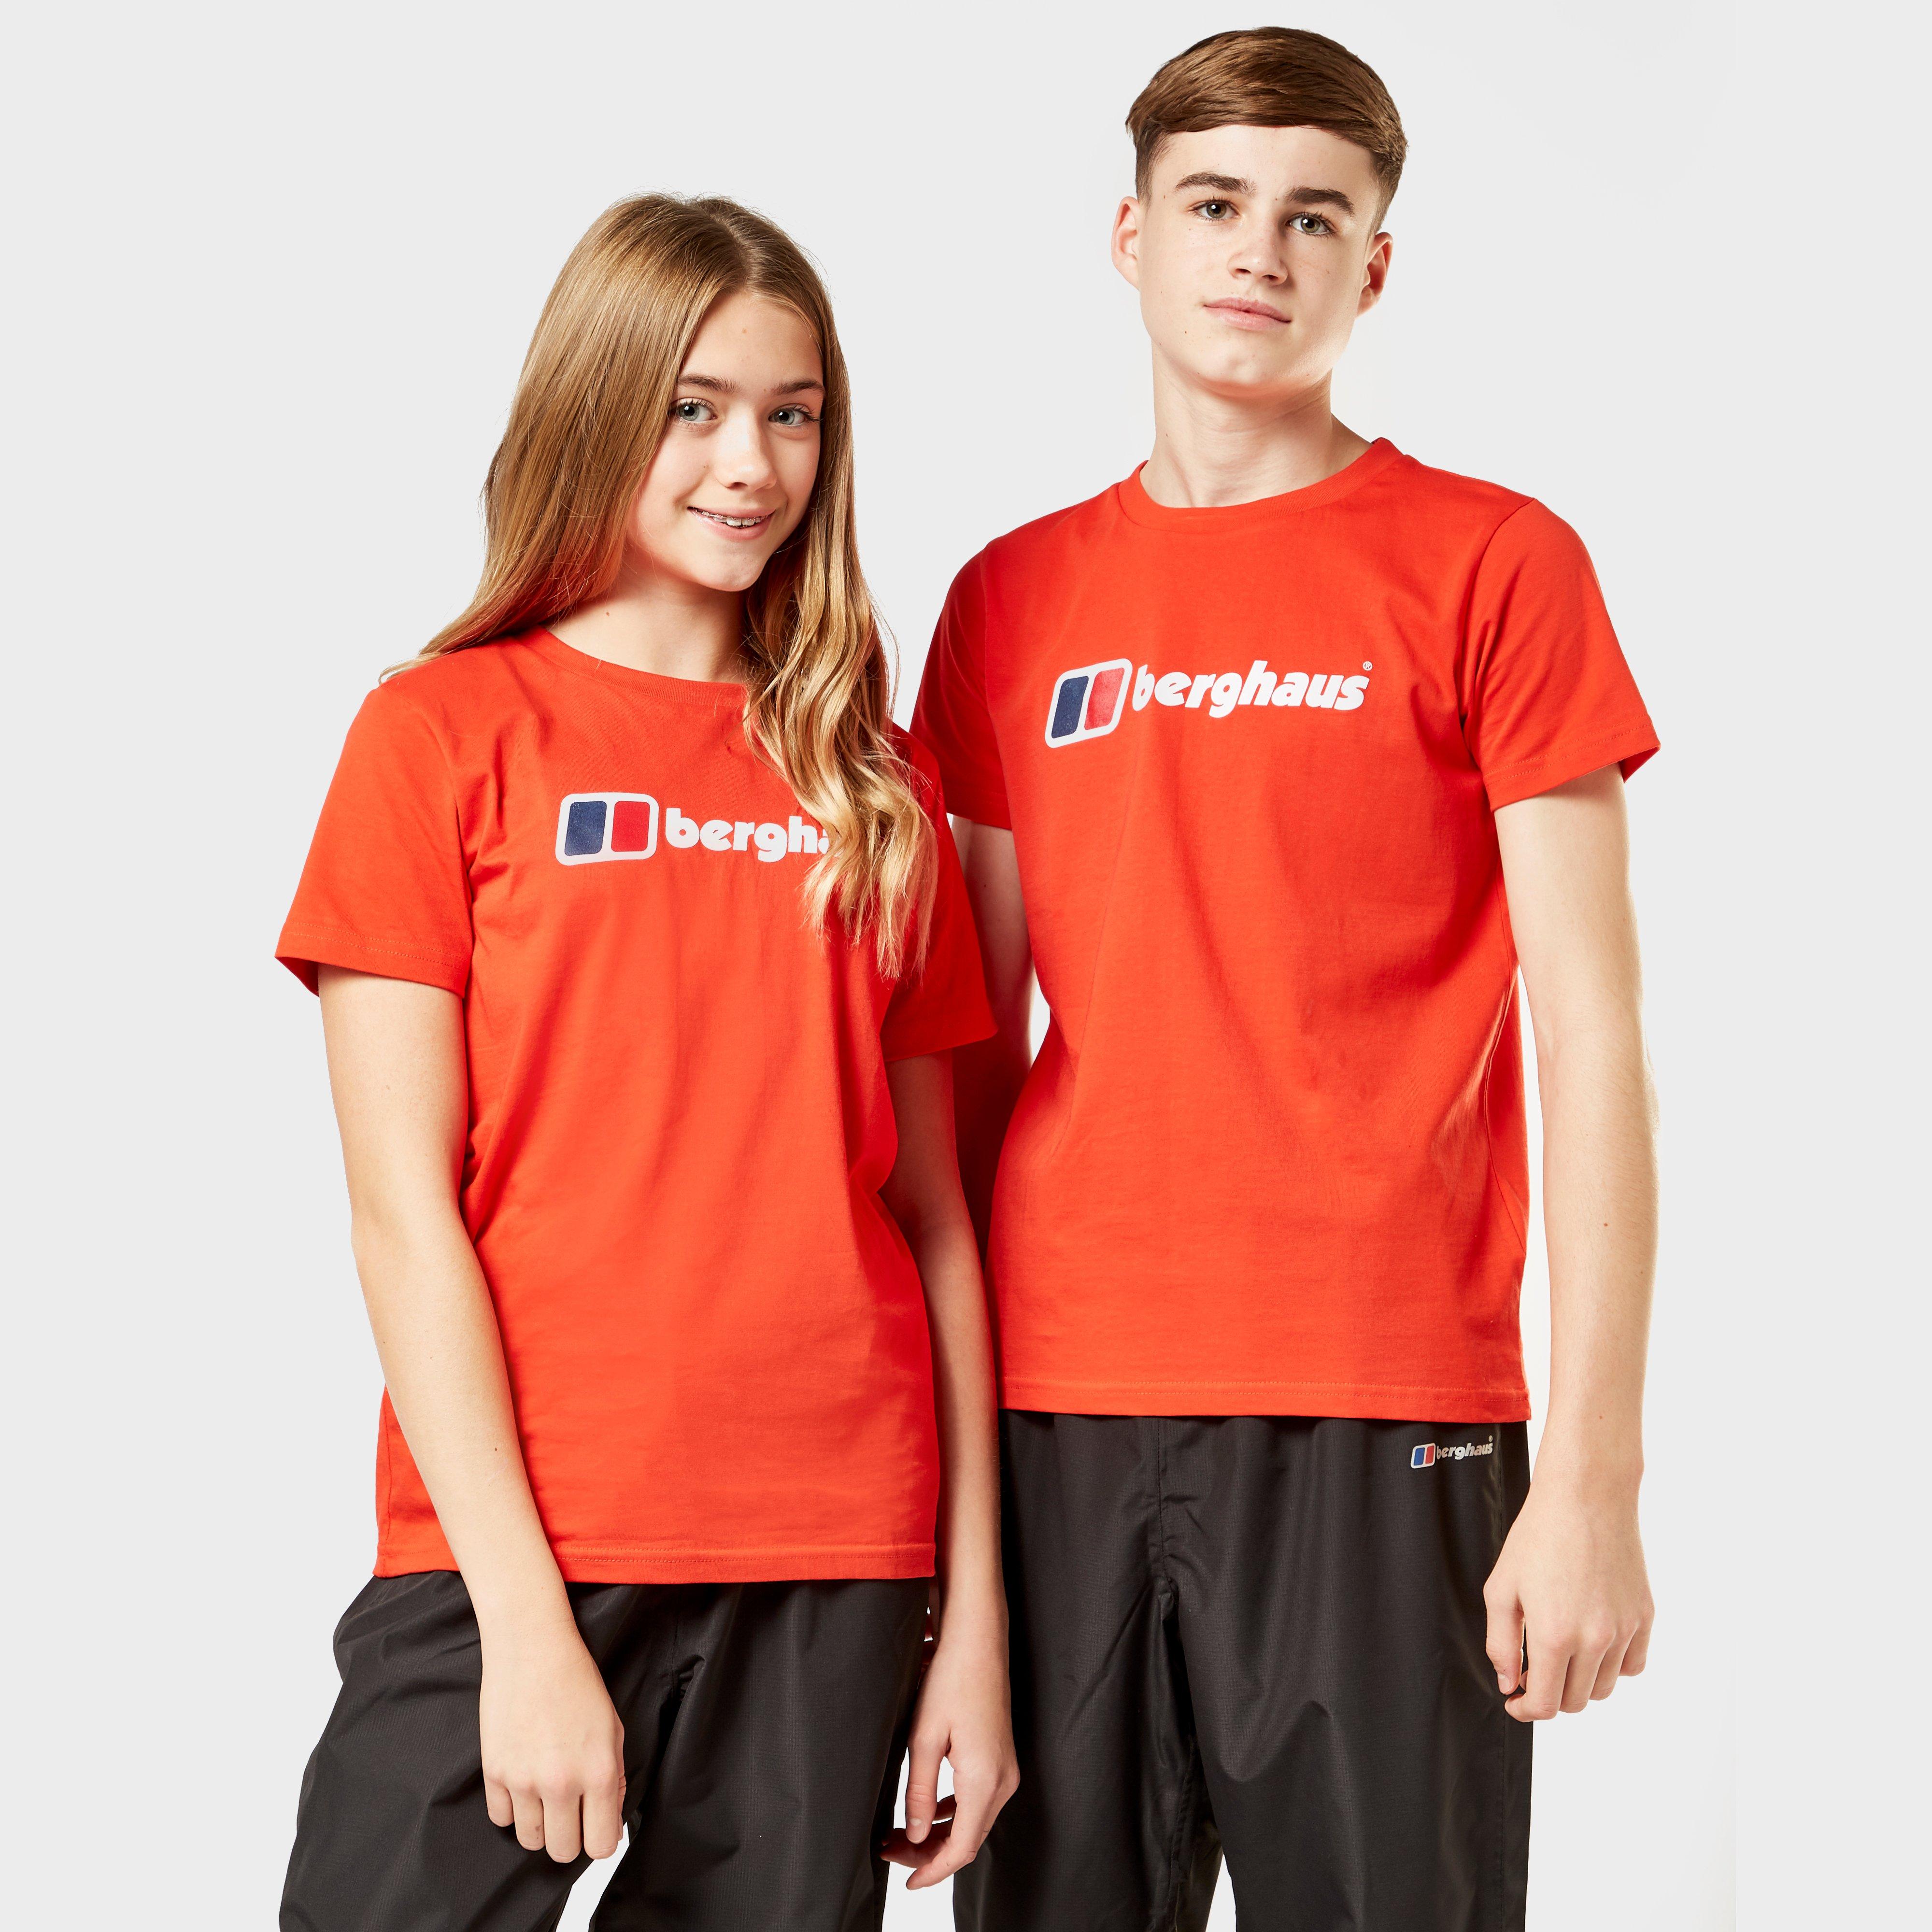 Berghaus Kids Logo Tee - Red/red  Red/red